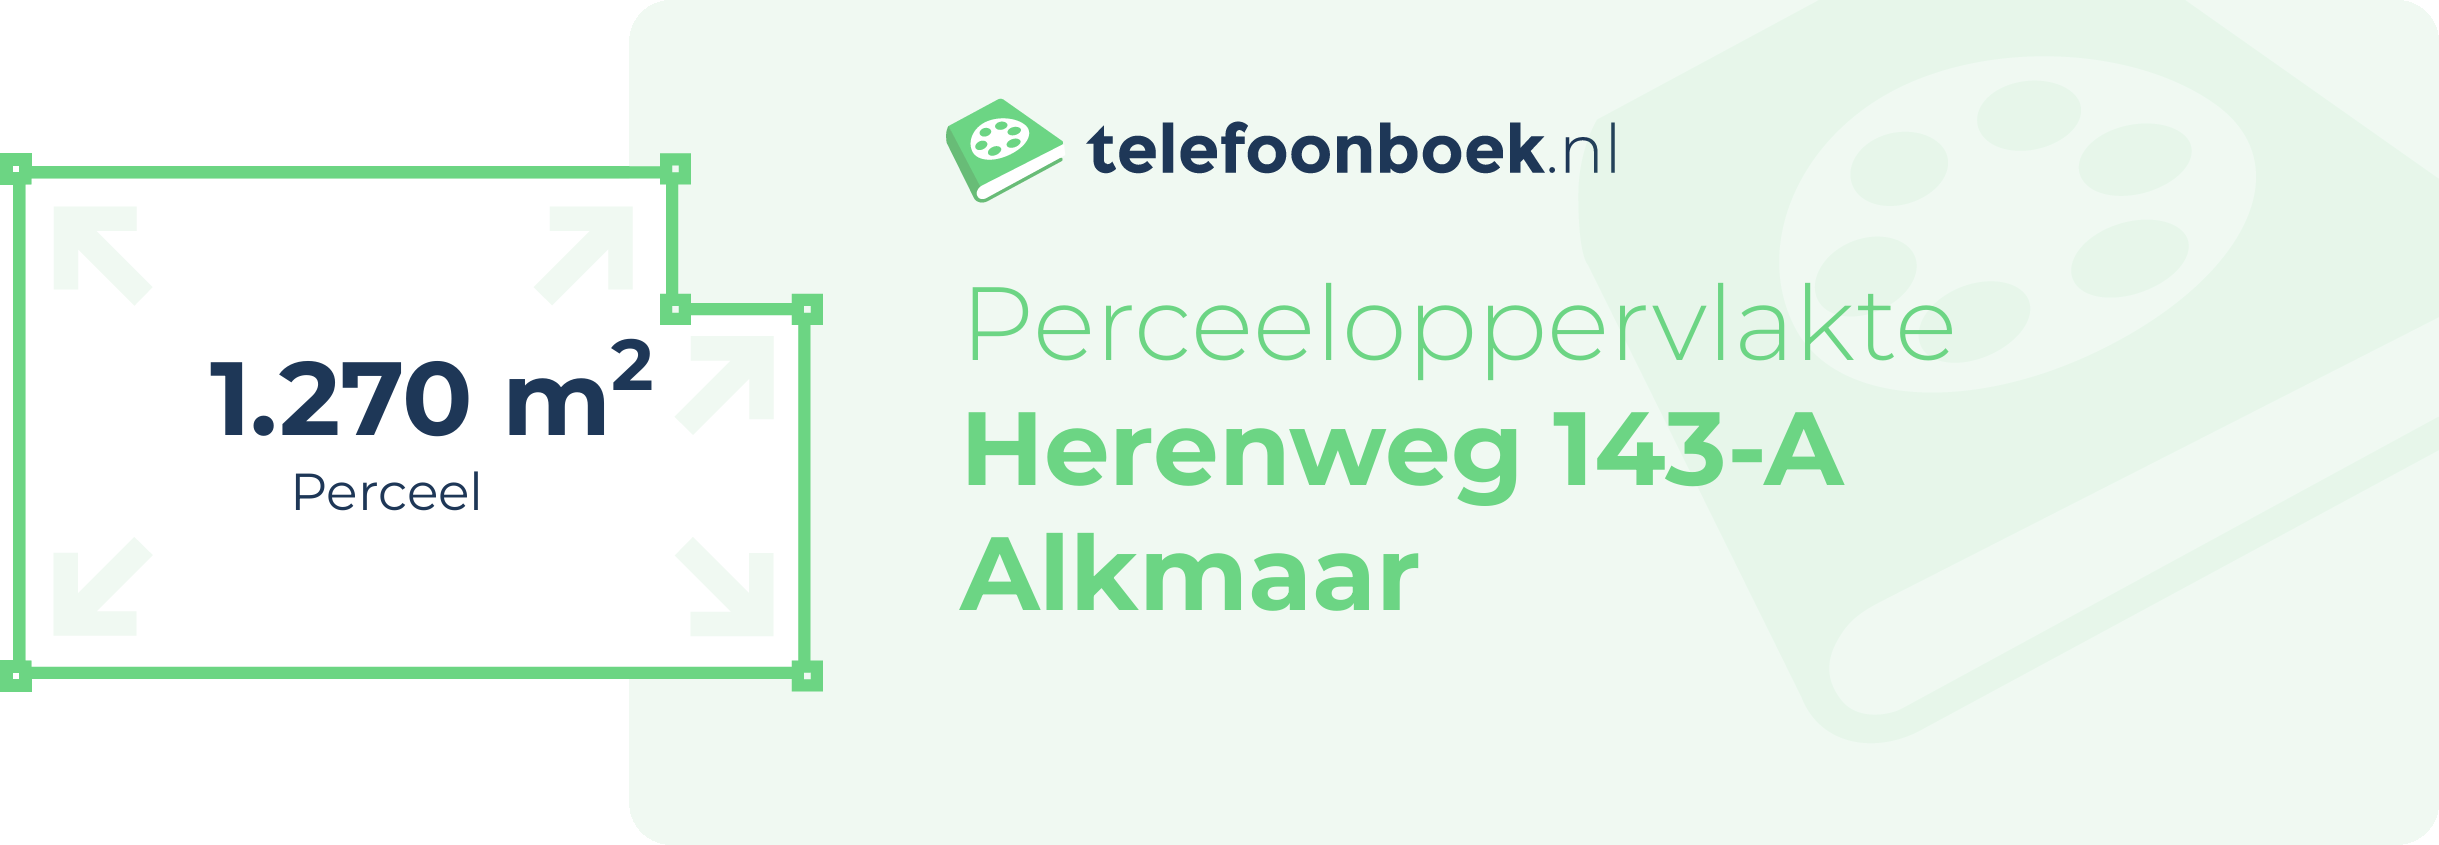 Perceeloppervlakte Herenweg 143-A Alkmaar